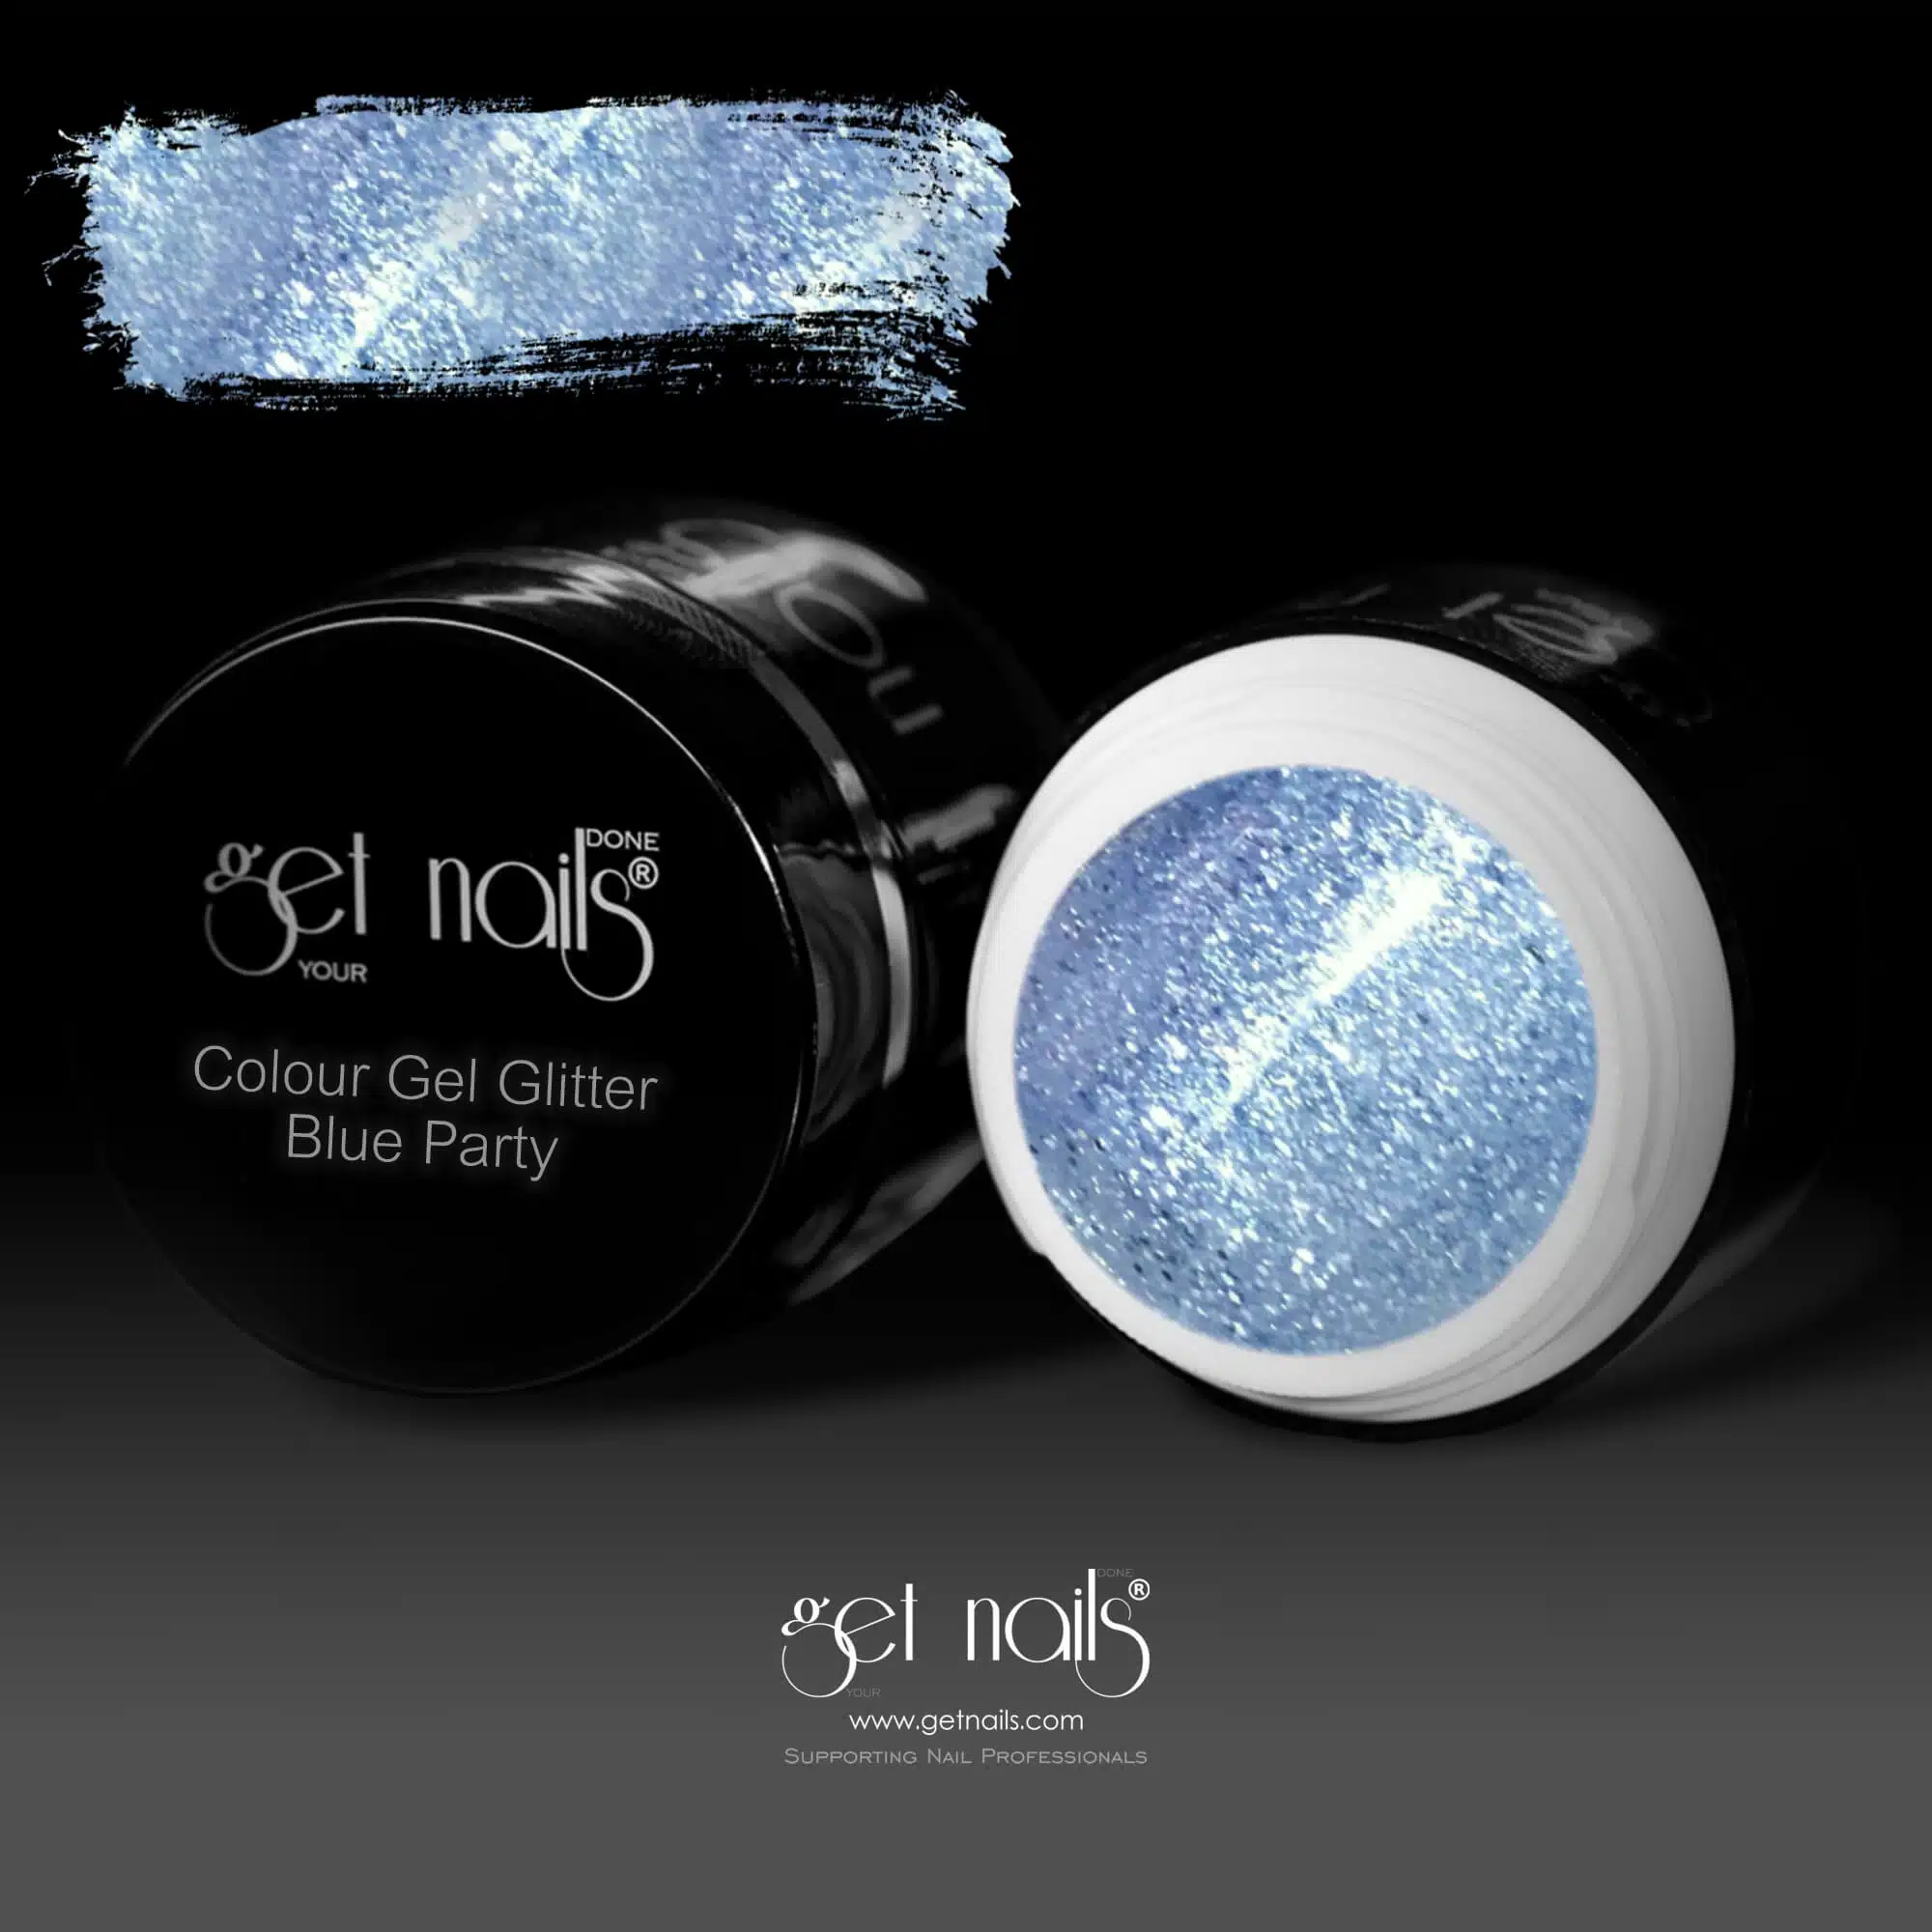 Get Nails Austria - Color Gel Glitter Blue Party 5g